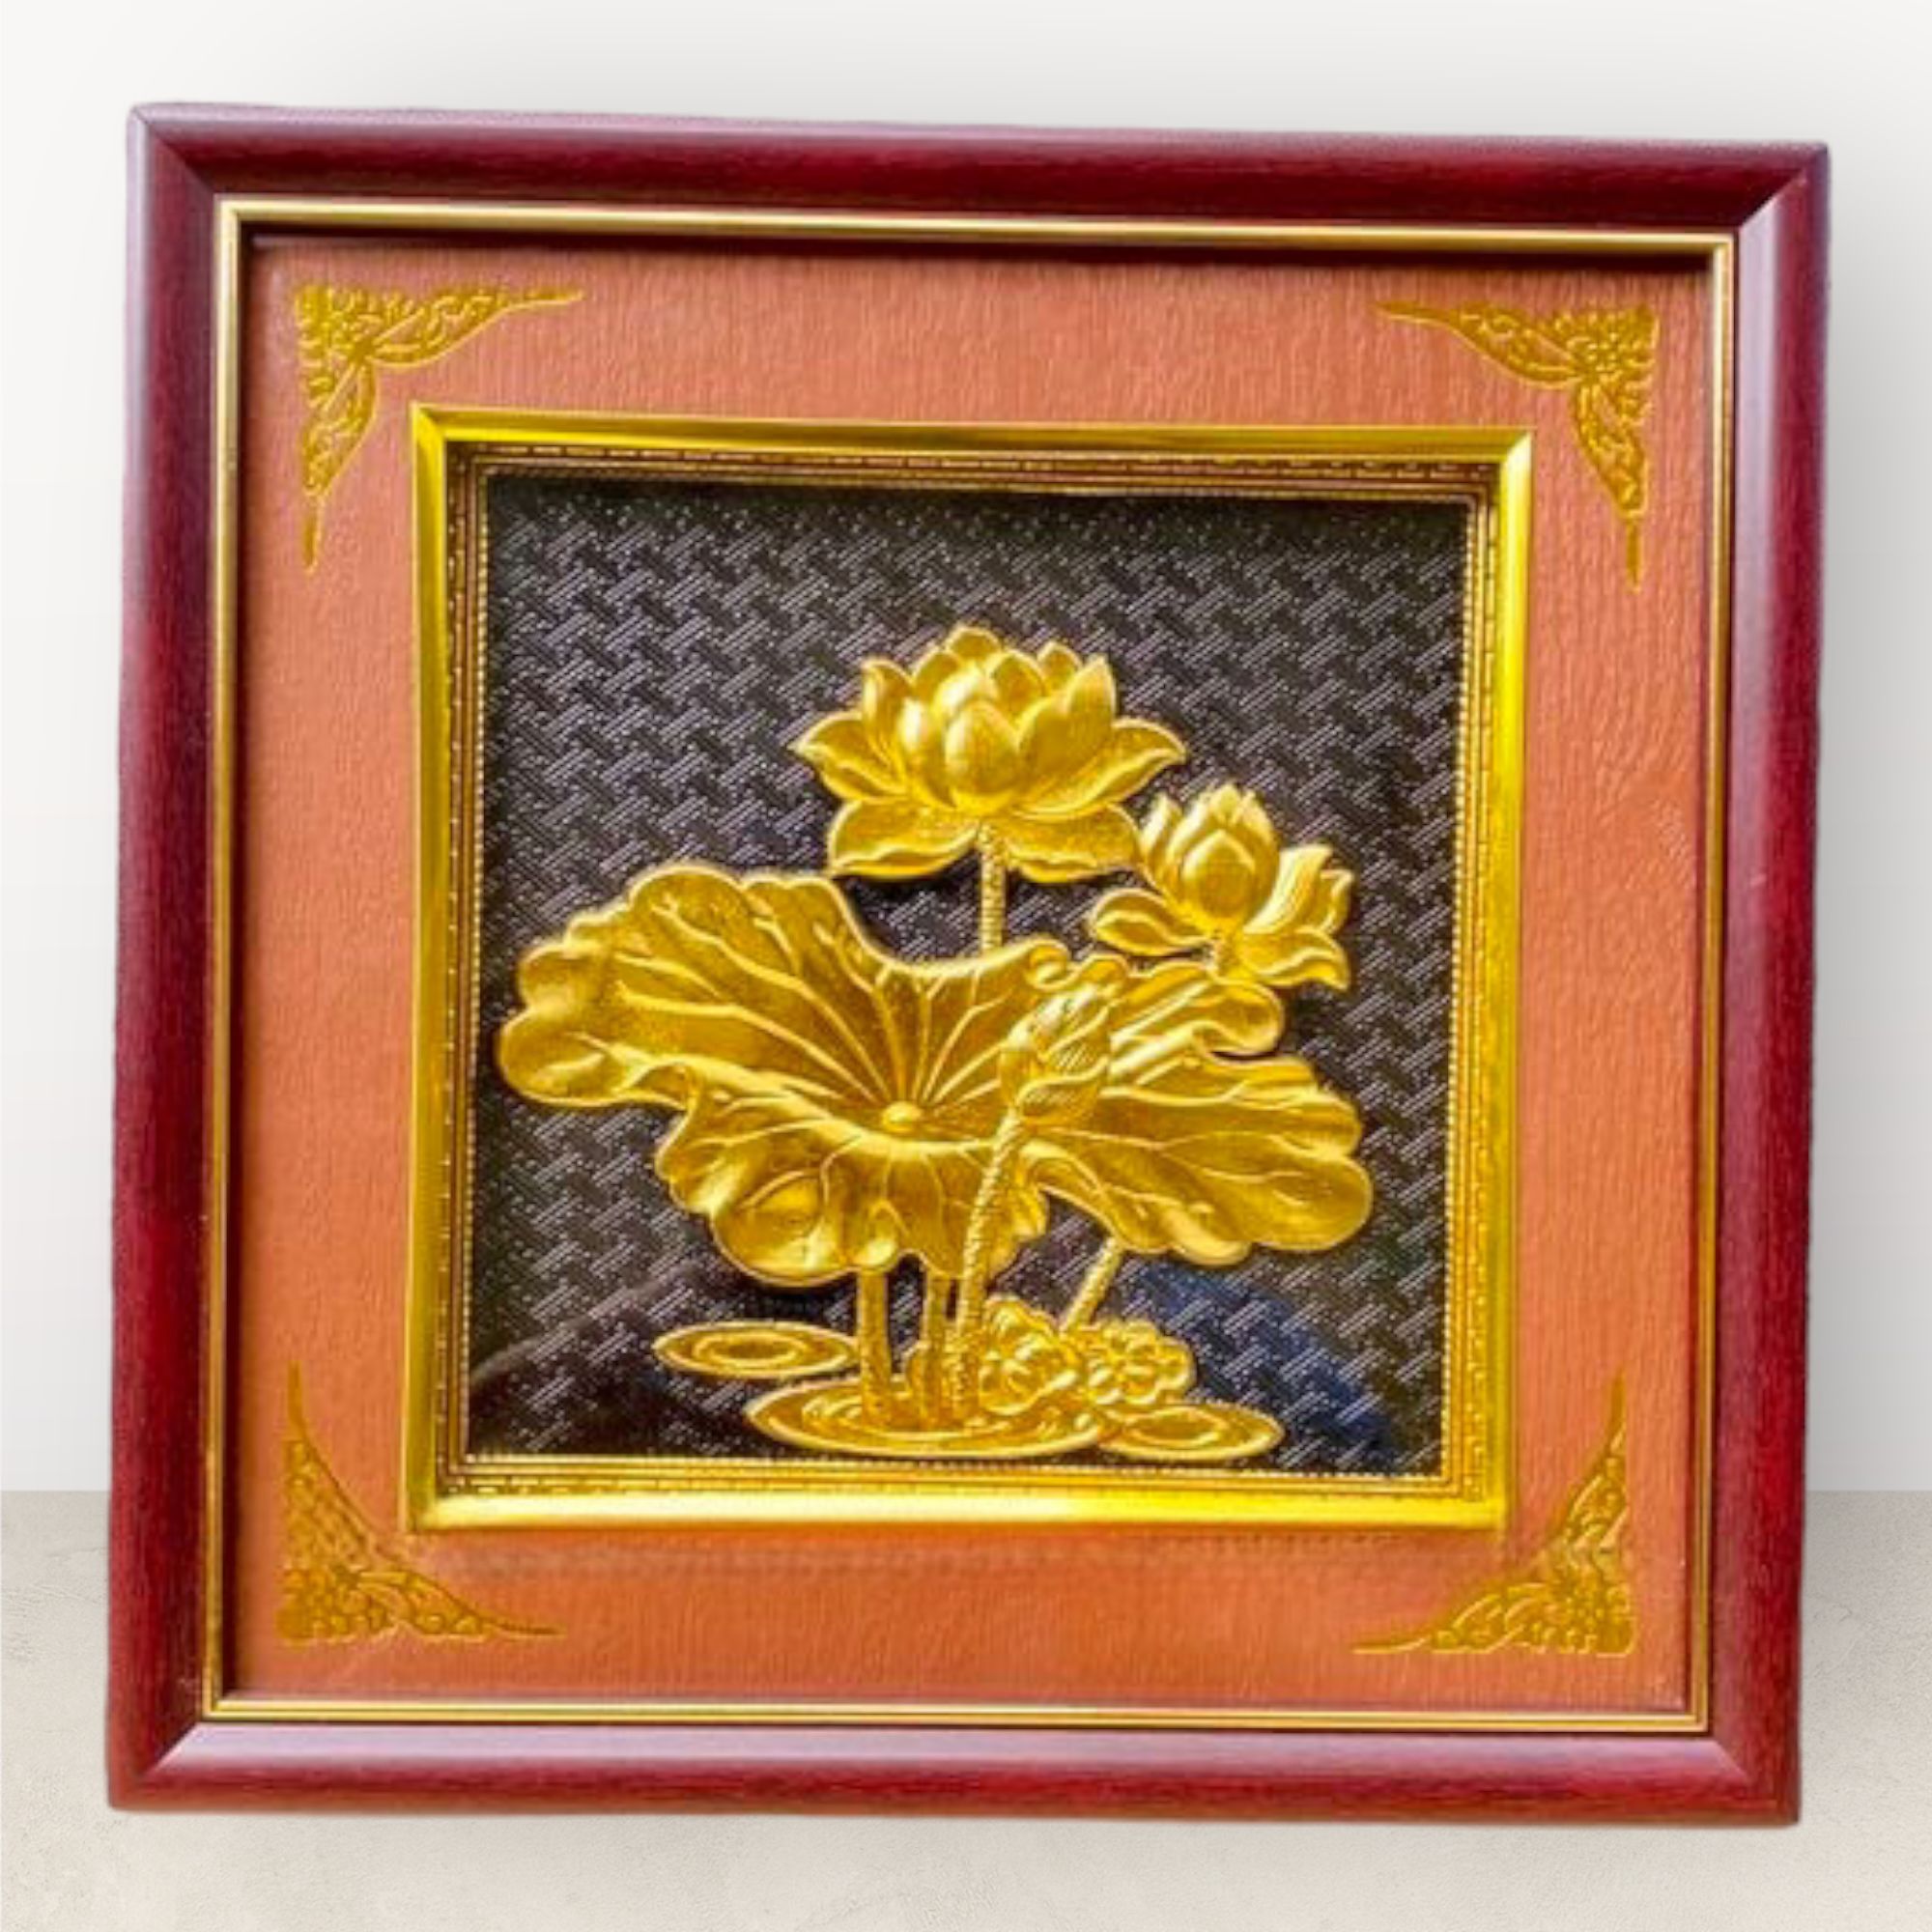  Tranh để bàn hoa sen đồng vàng dát vàng 26x26cm 